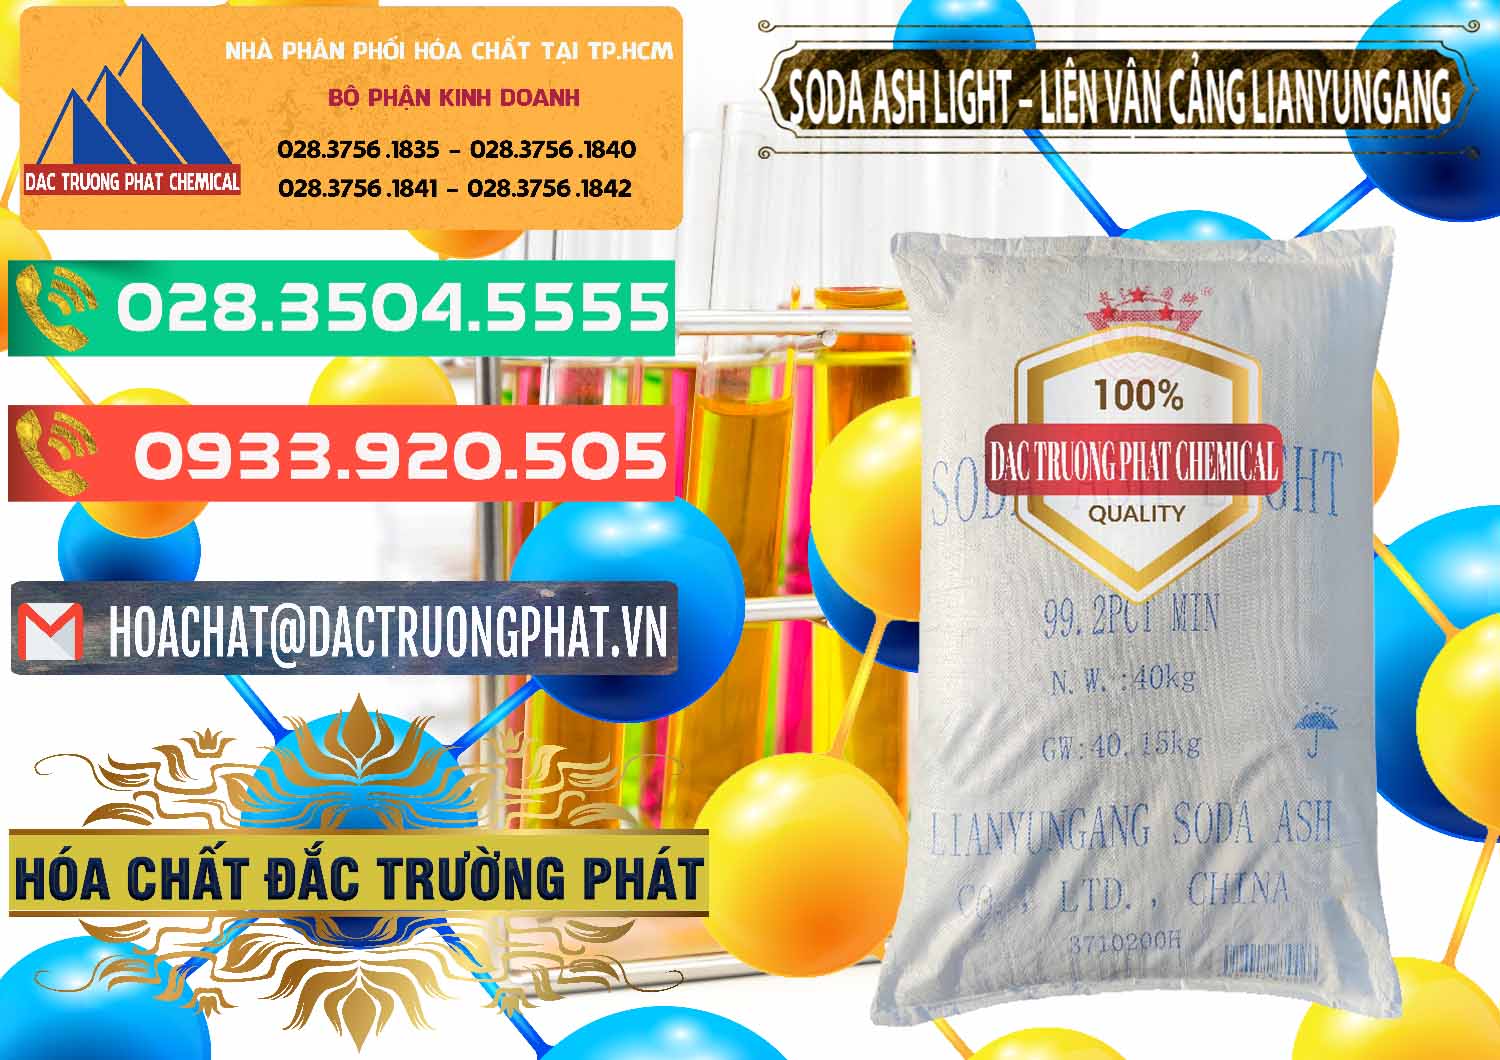 Cty chuyên nhập khẩu & bán Soda Ash Light - NA2CO3 Liên Vậng Cảng Lianyungang Trung Quốc China - 0197 - Công ty chuyên cung ứng & phân phối hóa chất tại TP.HCM - congtyhoachat.com.vn